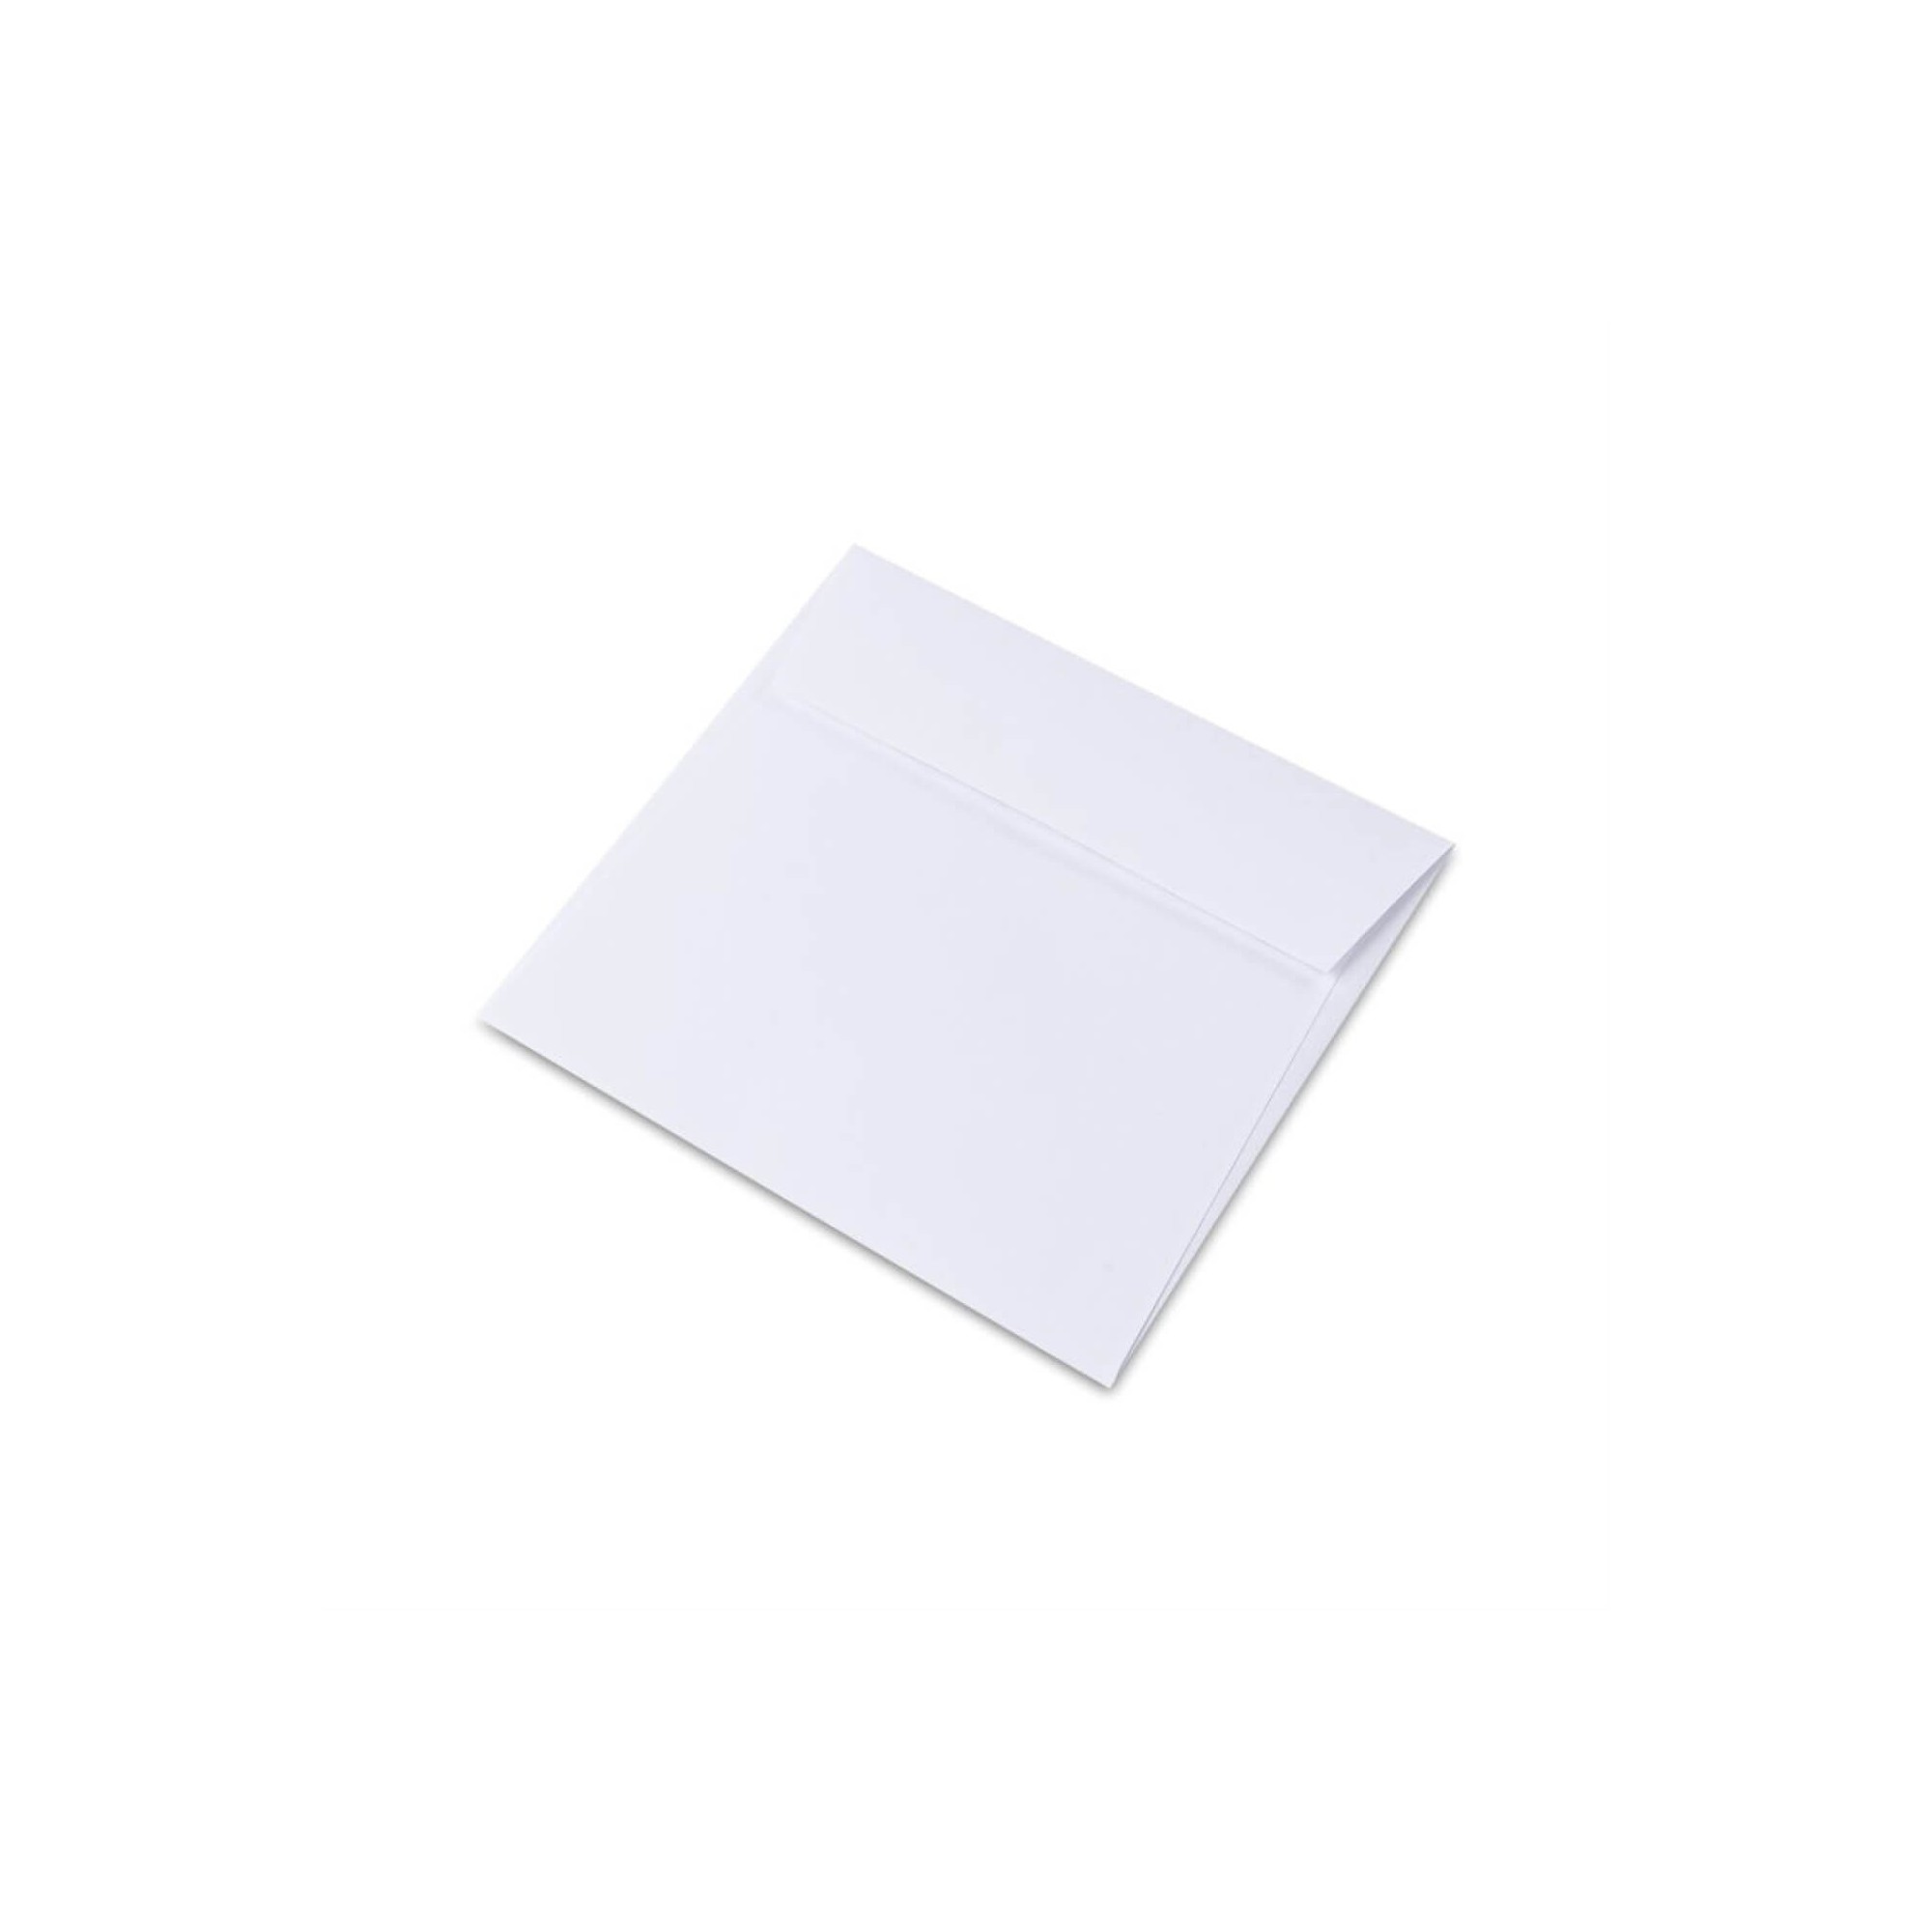 Papeterie - Enveloppes - Cartes de voeux - Carré